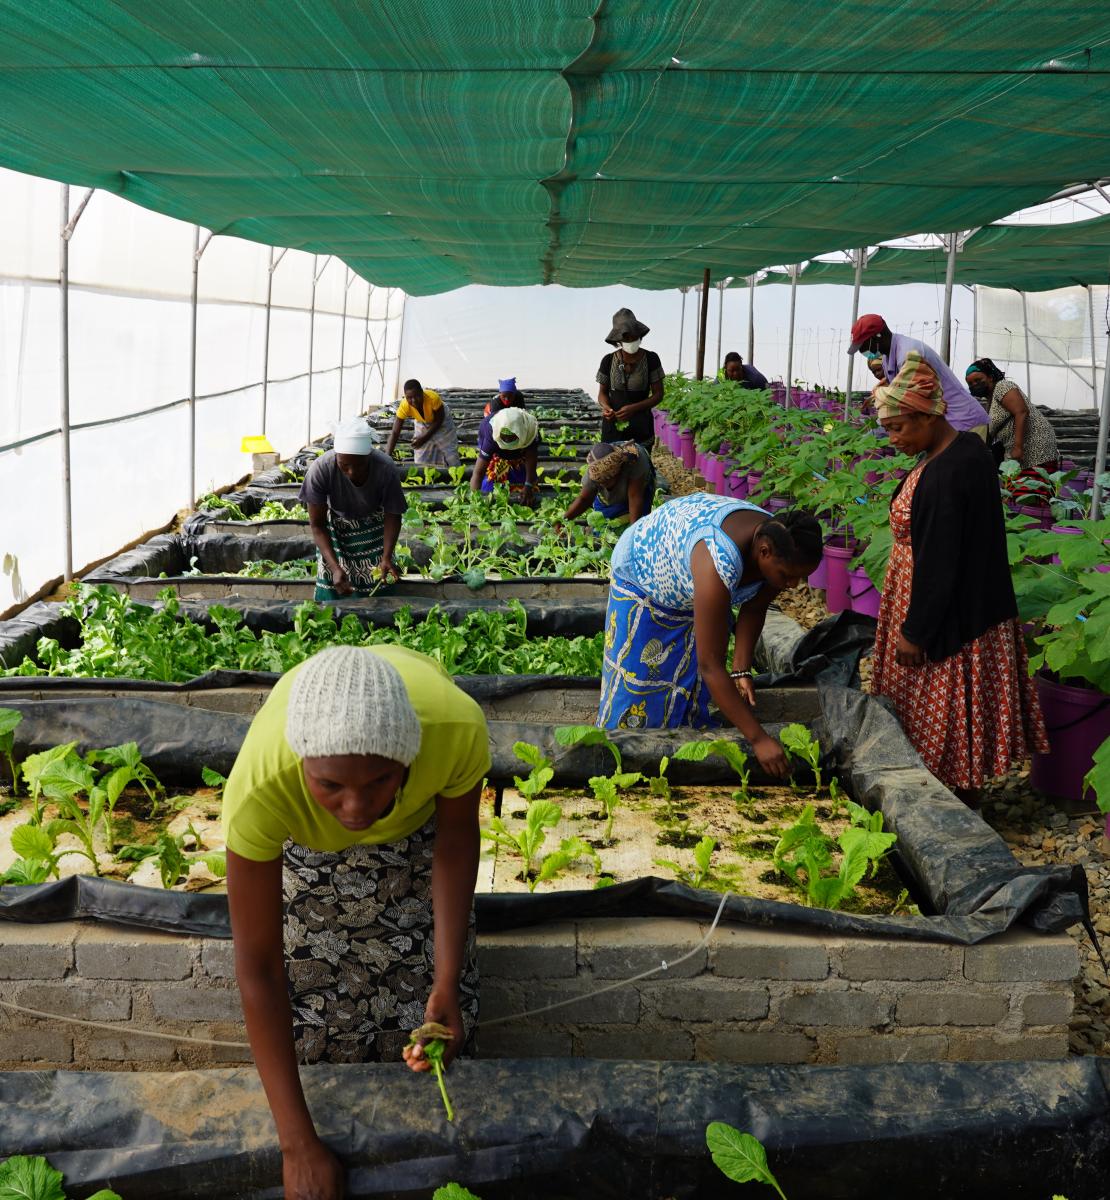 Las mujeres en un invernadero plantan e inspeccionan diferentes filas de plantas y variedades. Llevan faldas de colores y estampados.